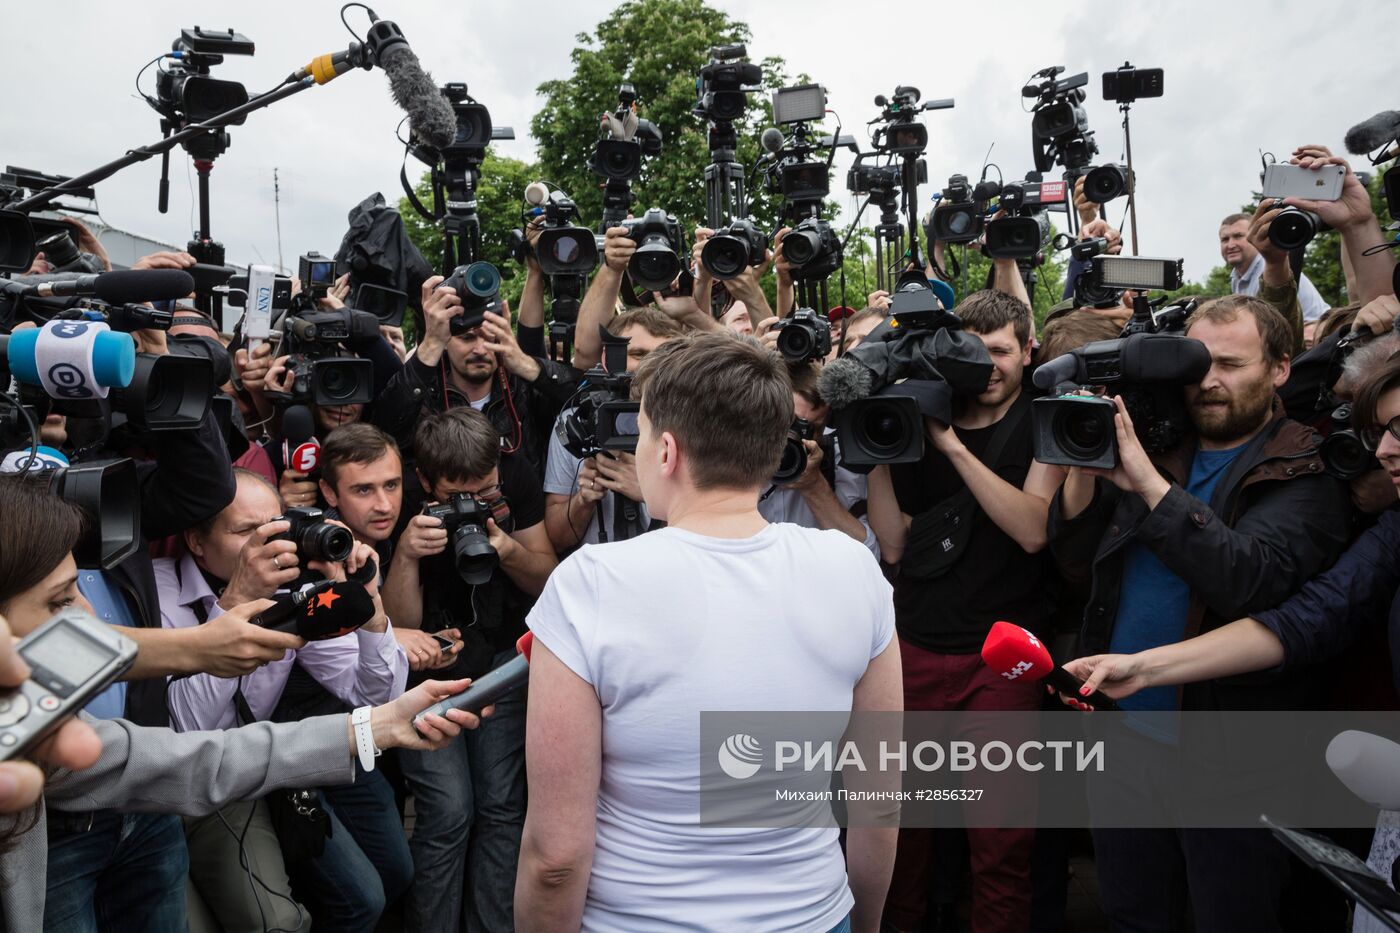 Украинская военнослужащая Надежда Савченко в аэропорту Киева